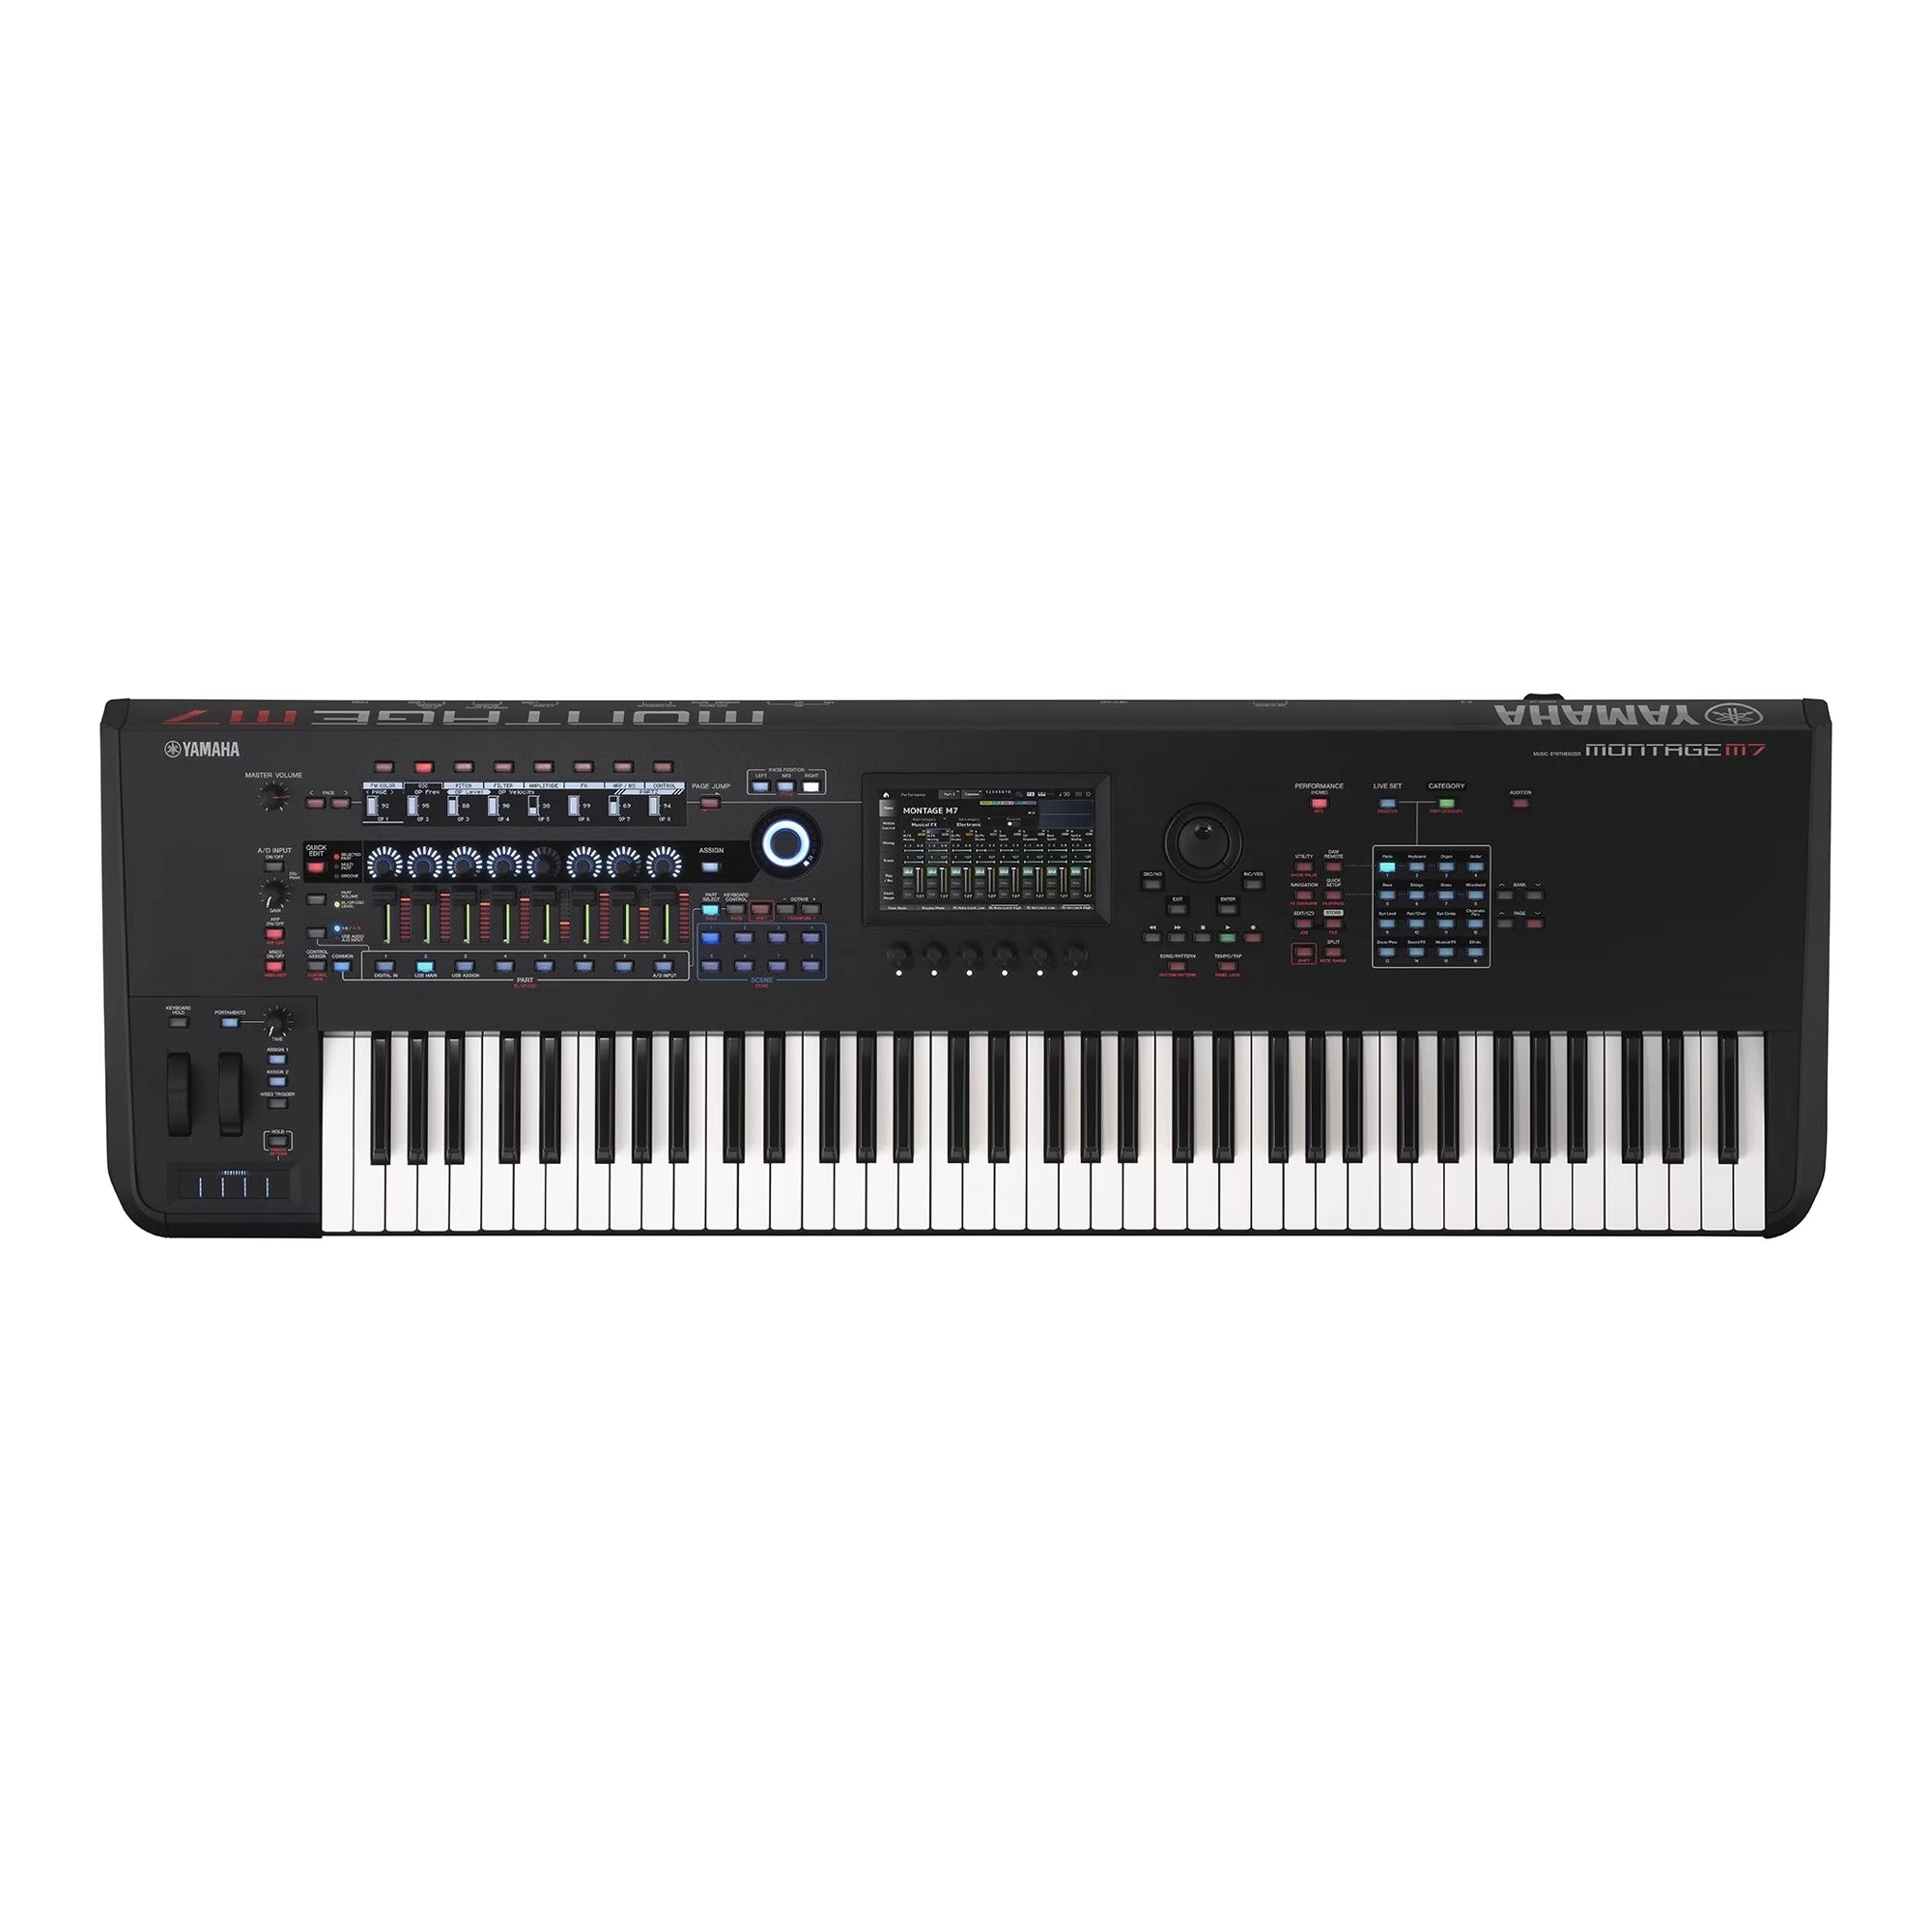 Yamaha Montage M7 76-key Synthesizer